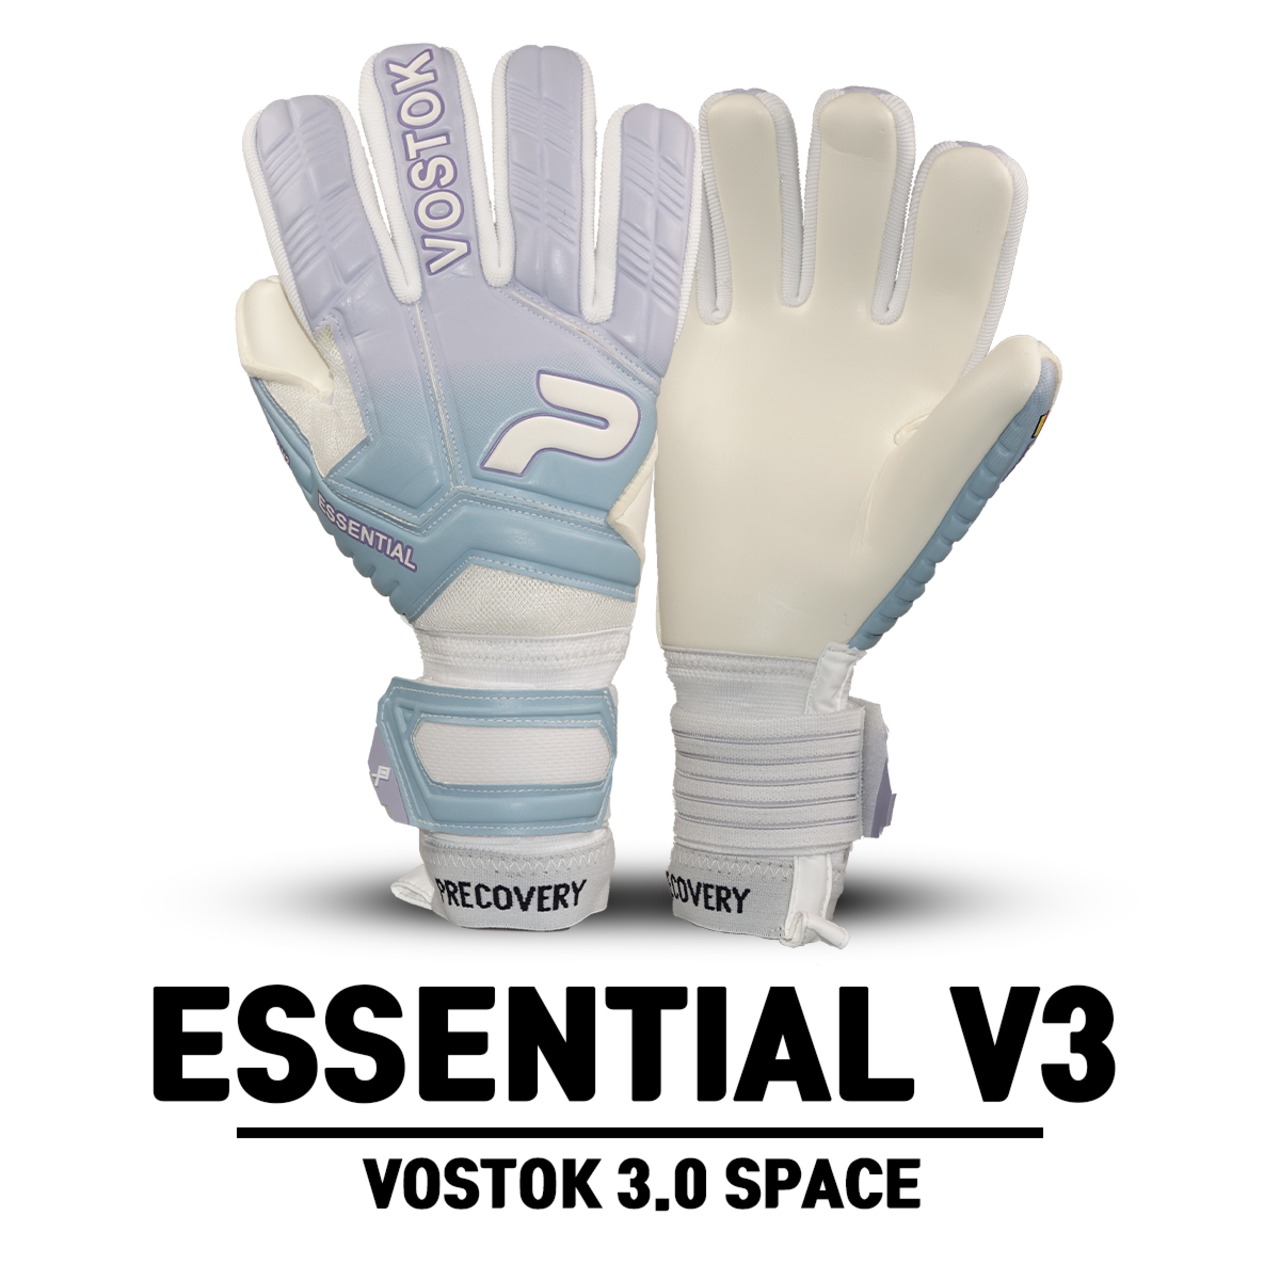 VOSTOK 3.0 ESSENTIAL V3 SPACE